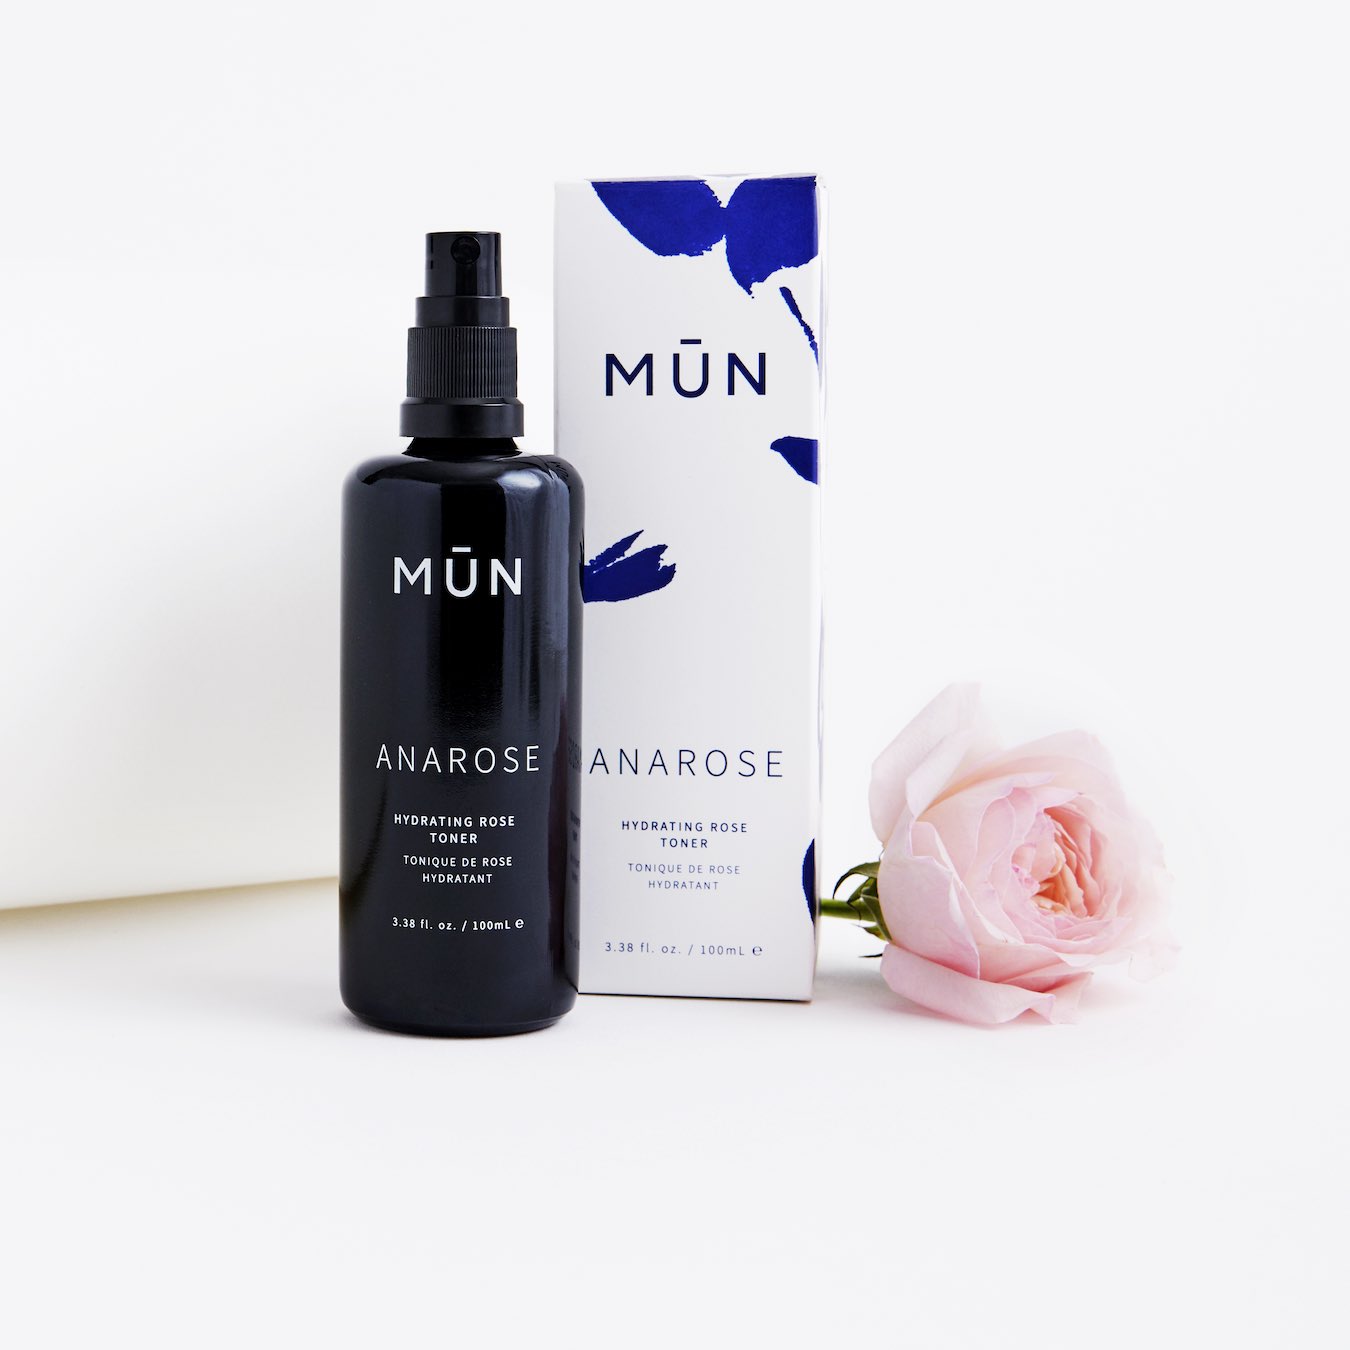 MUN Anarose Hydrating Rose Toner Packaging - Natural & Organic Skin Care